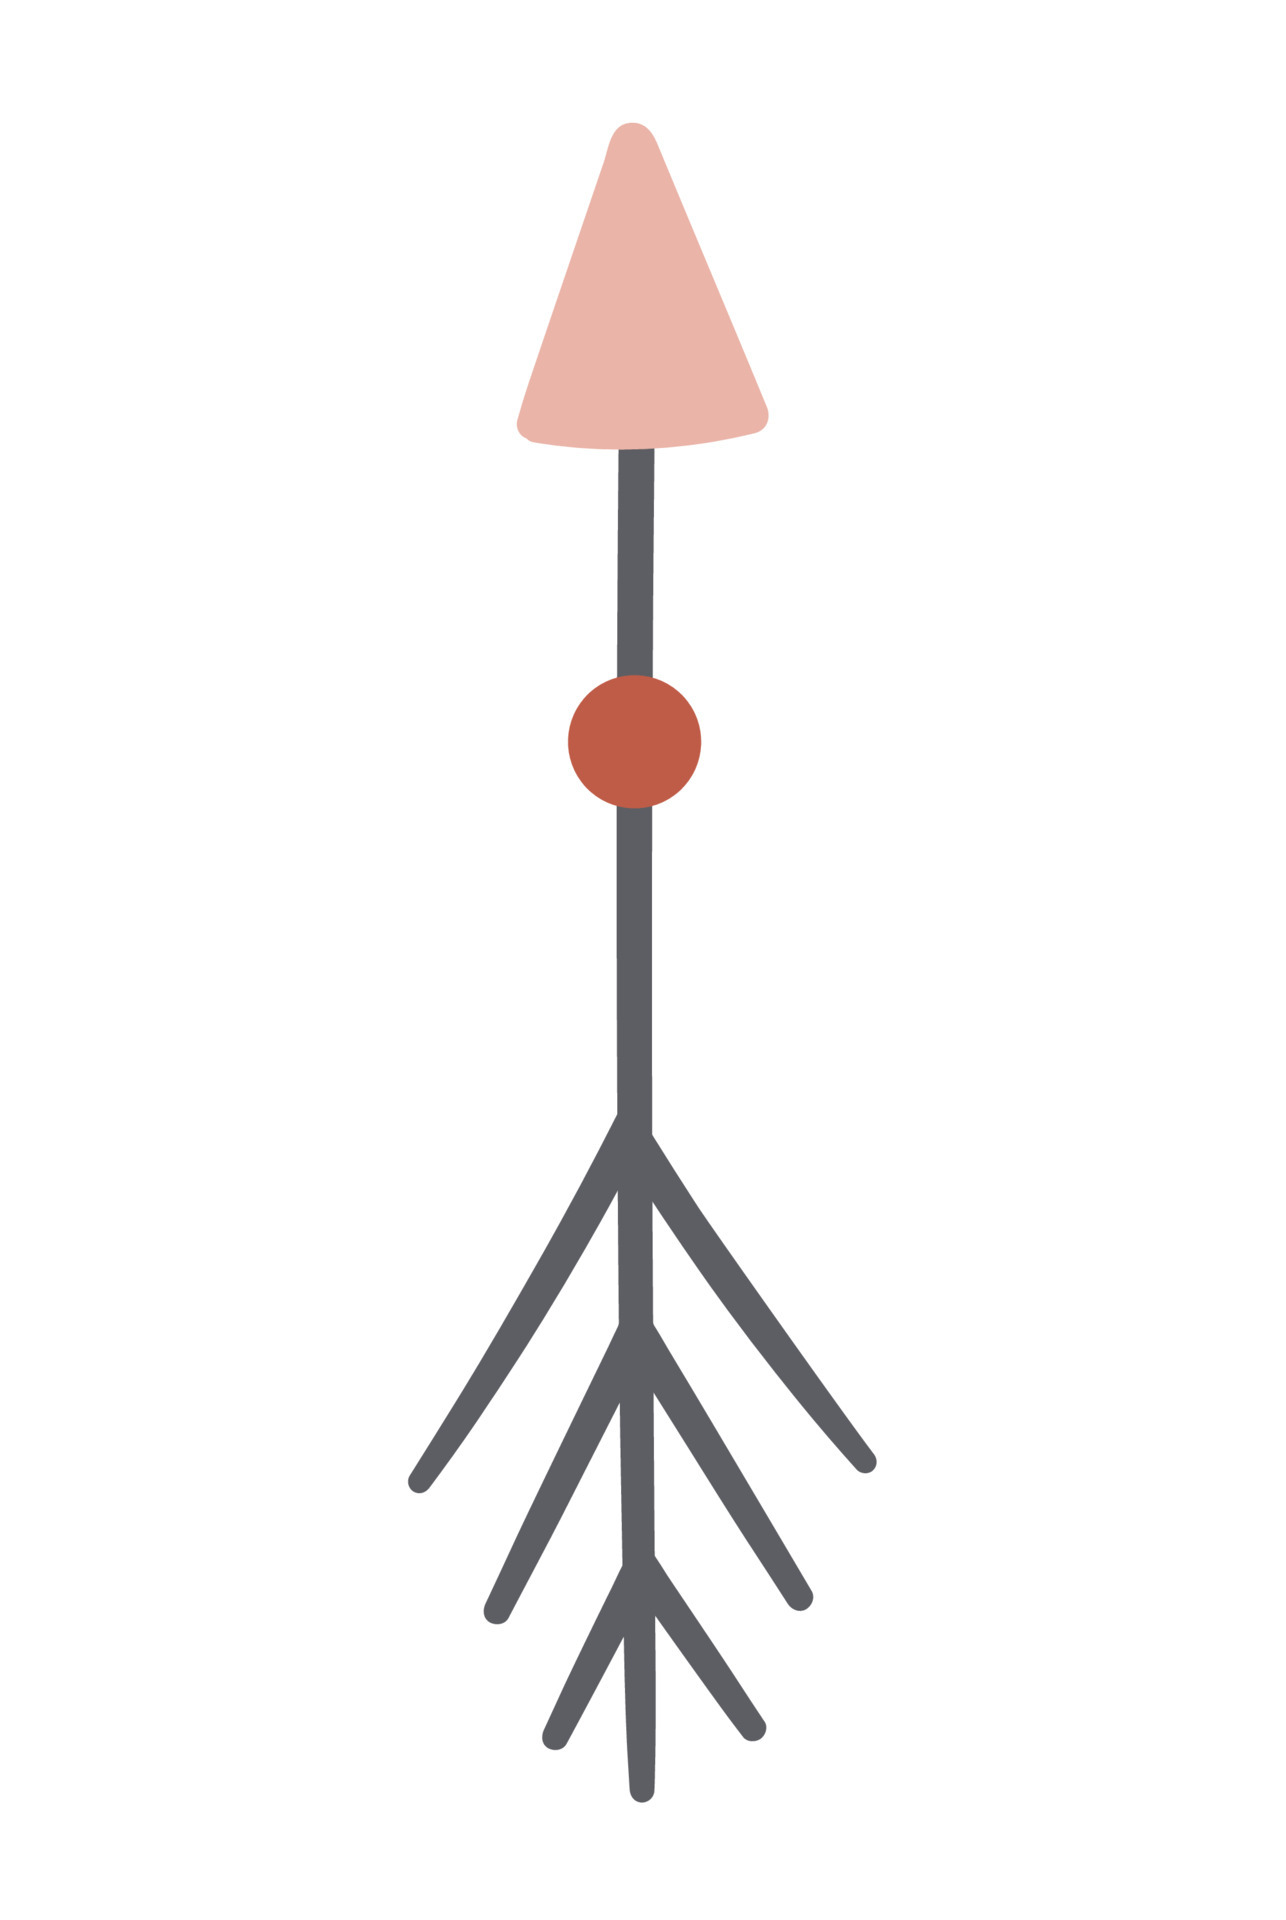 Vector bohemian style arrow. Cute boho folk symbol isolated on